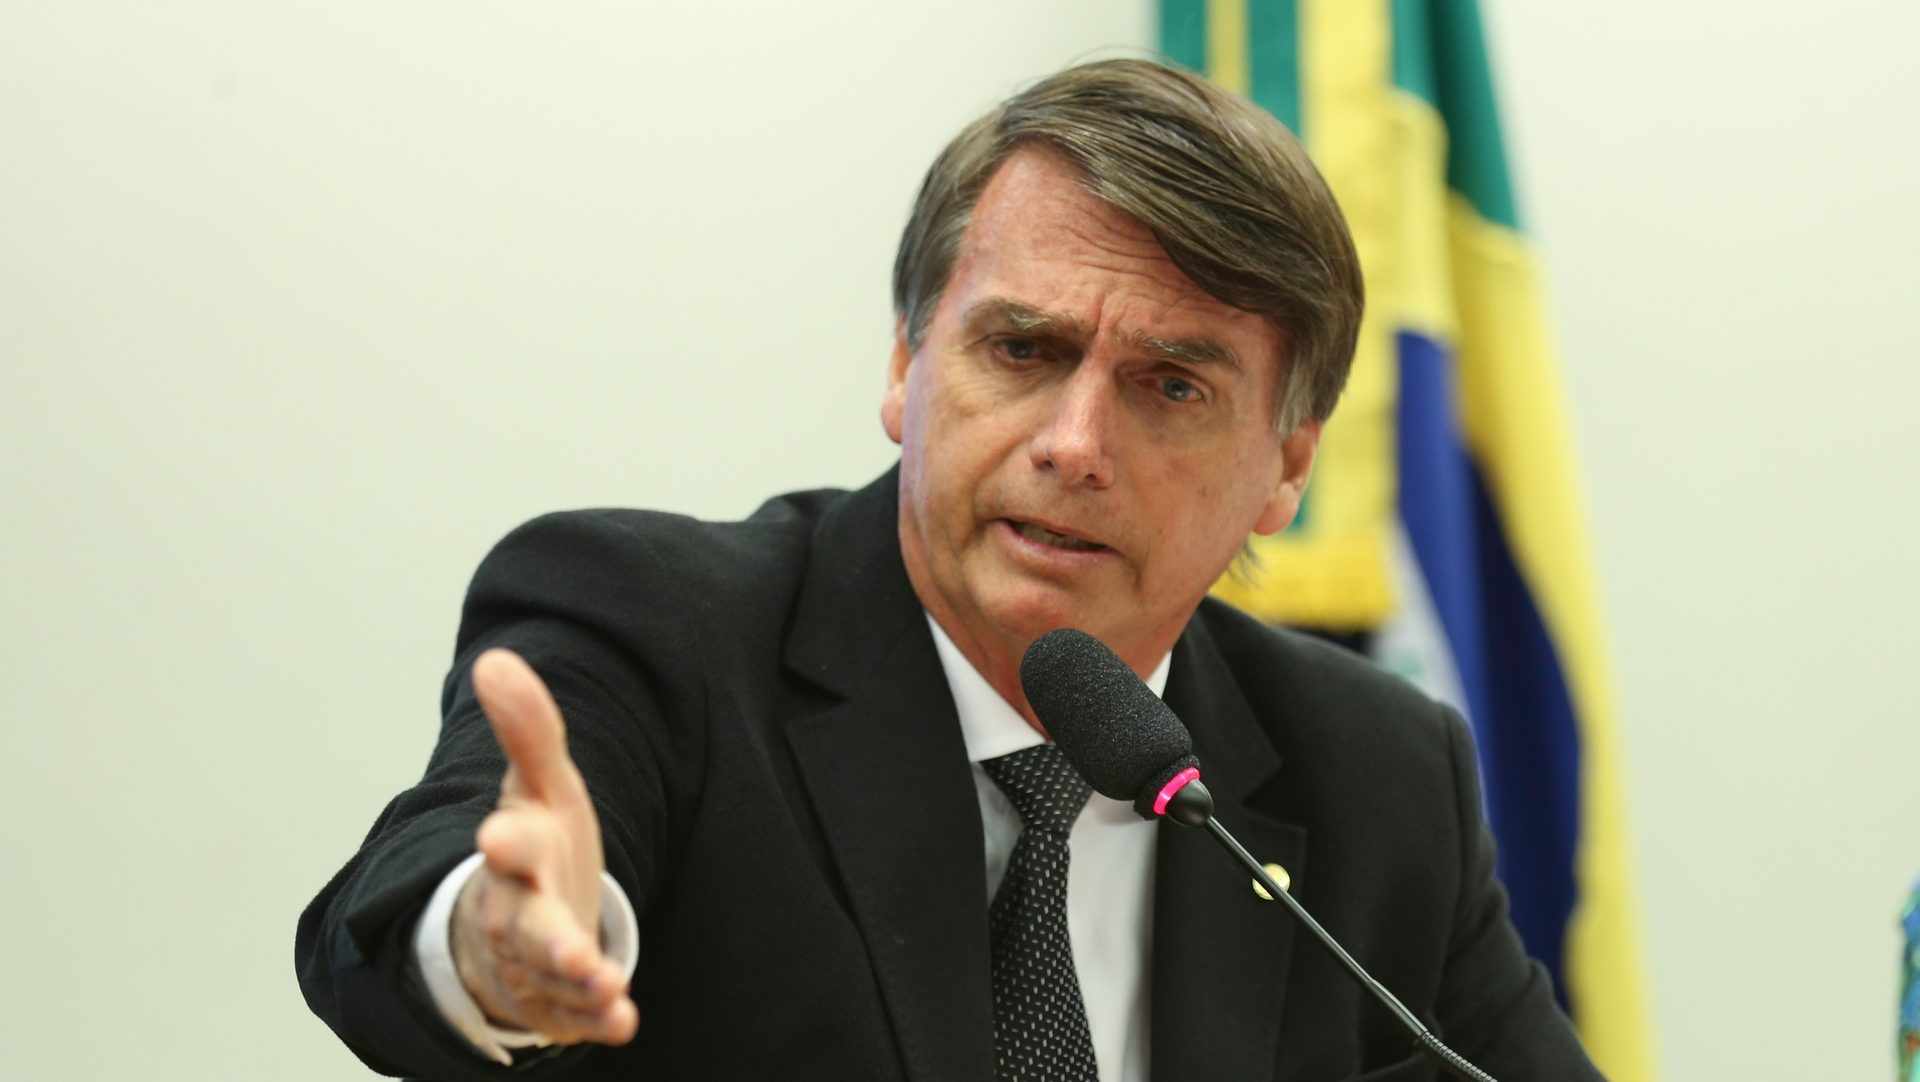 Le populiste Jair Bolsonaro est favori pour le 2e tour de l'élection présidentielle au Brésil | Flickr CC BY 2.0 